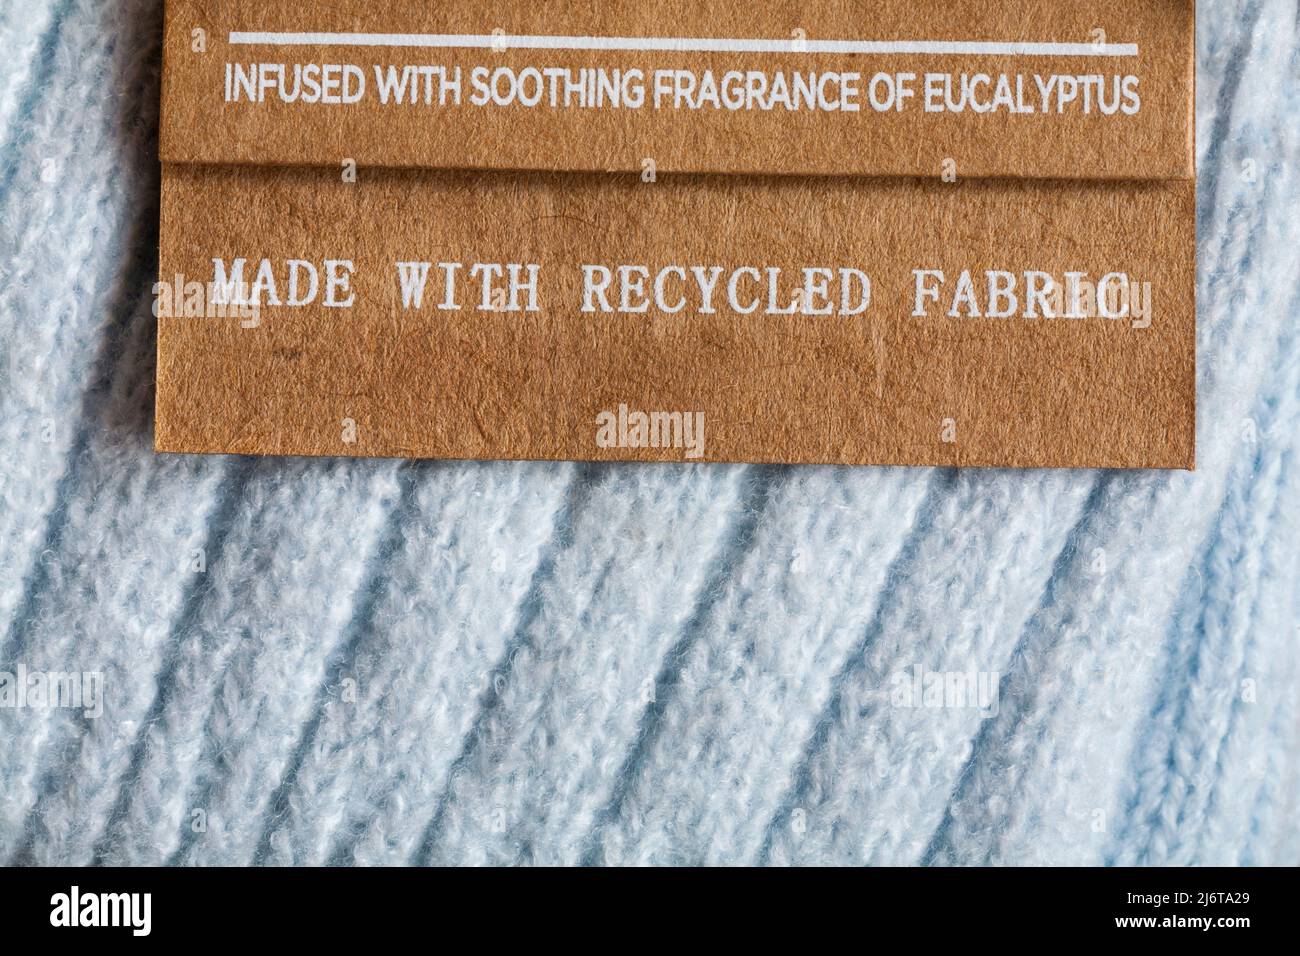 Fabriqué avec un tissu recyclé imprégné d'une étiquette d'eucalyptus apaisante sur une paire de chaussettes Banque D'Images